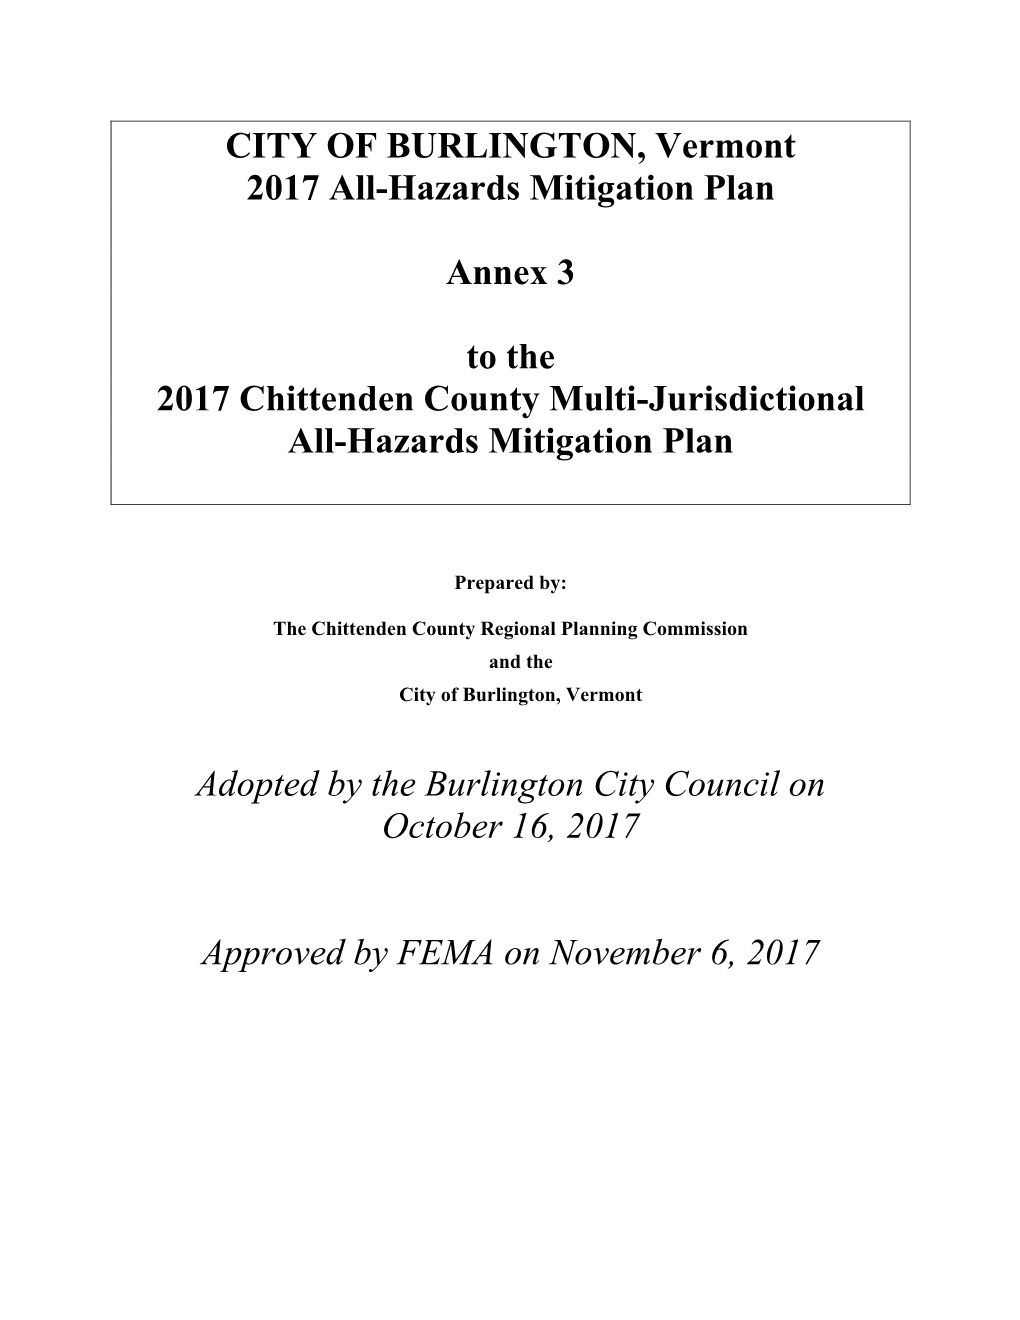 Mitigation Plan